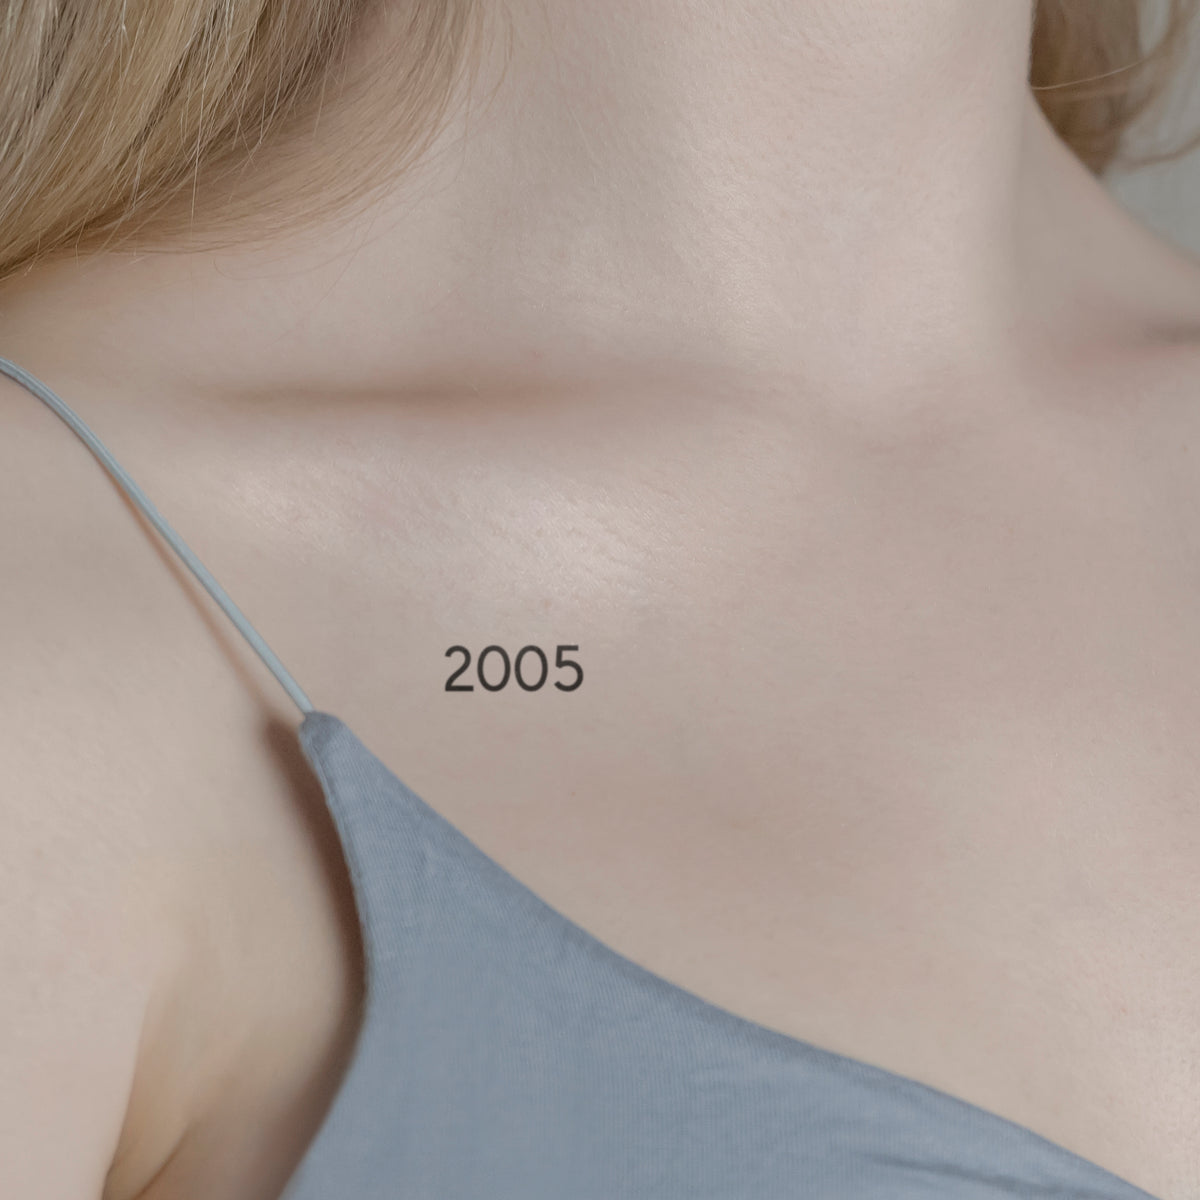 Zahlen Tattoo Geburtsjahr 2005 von minink, der Marke für temporäre Tattoos.